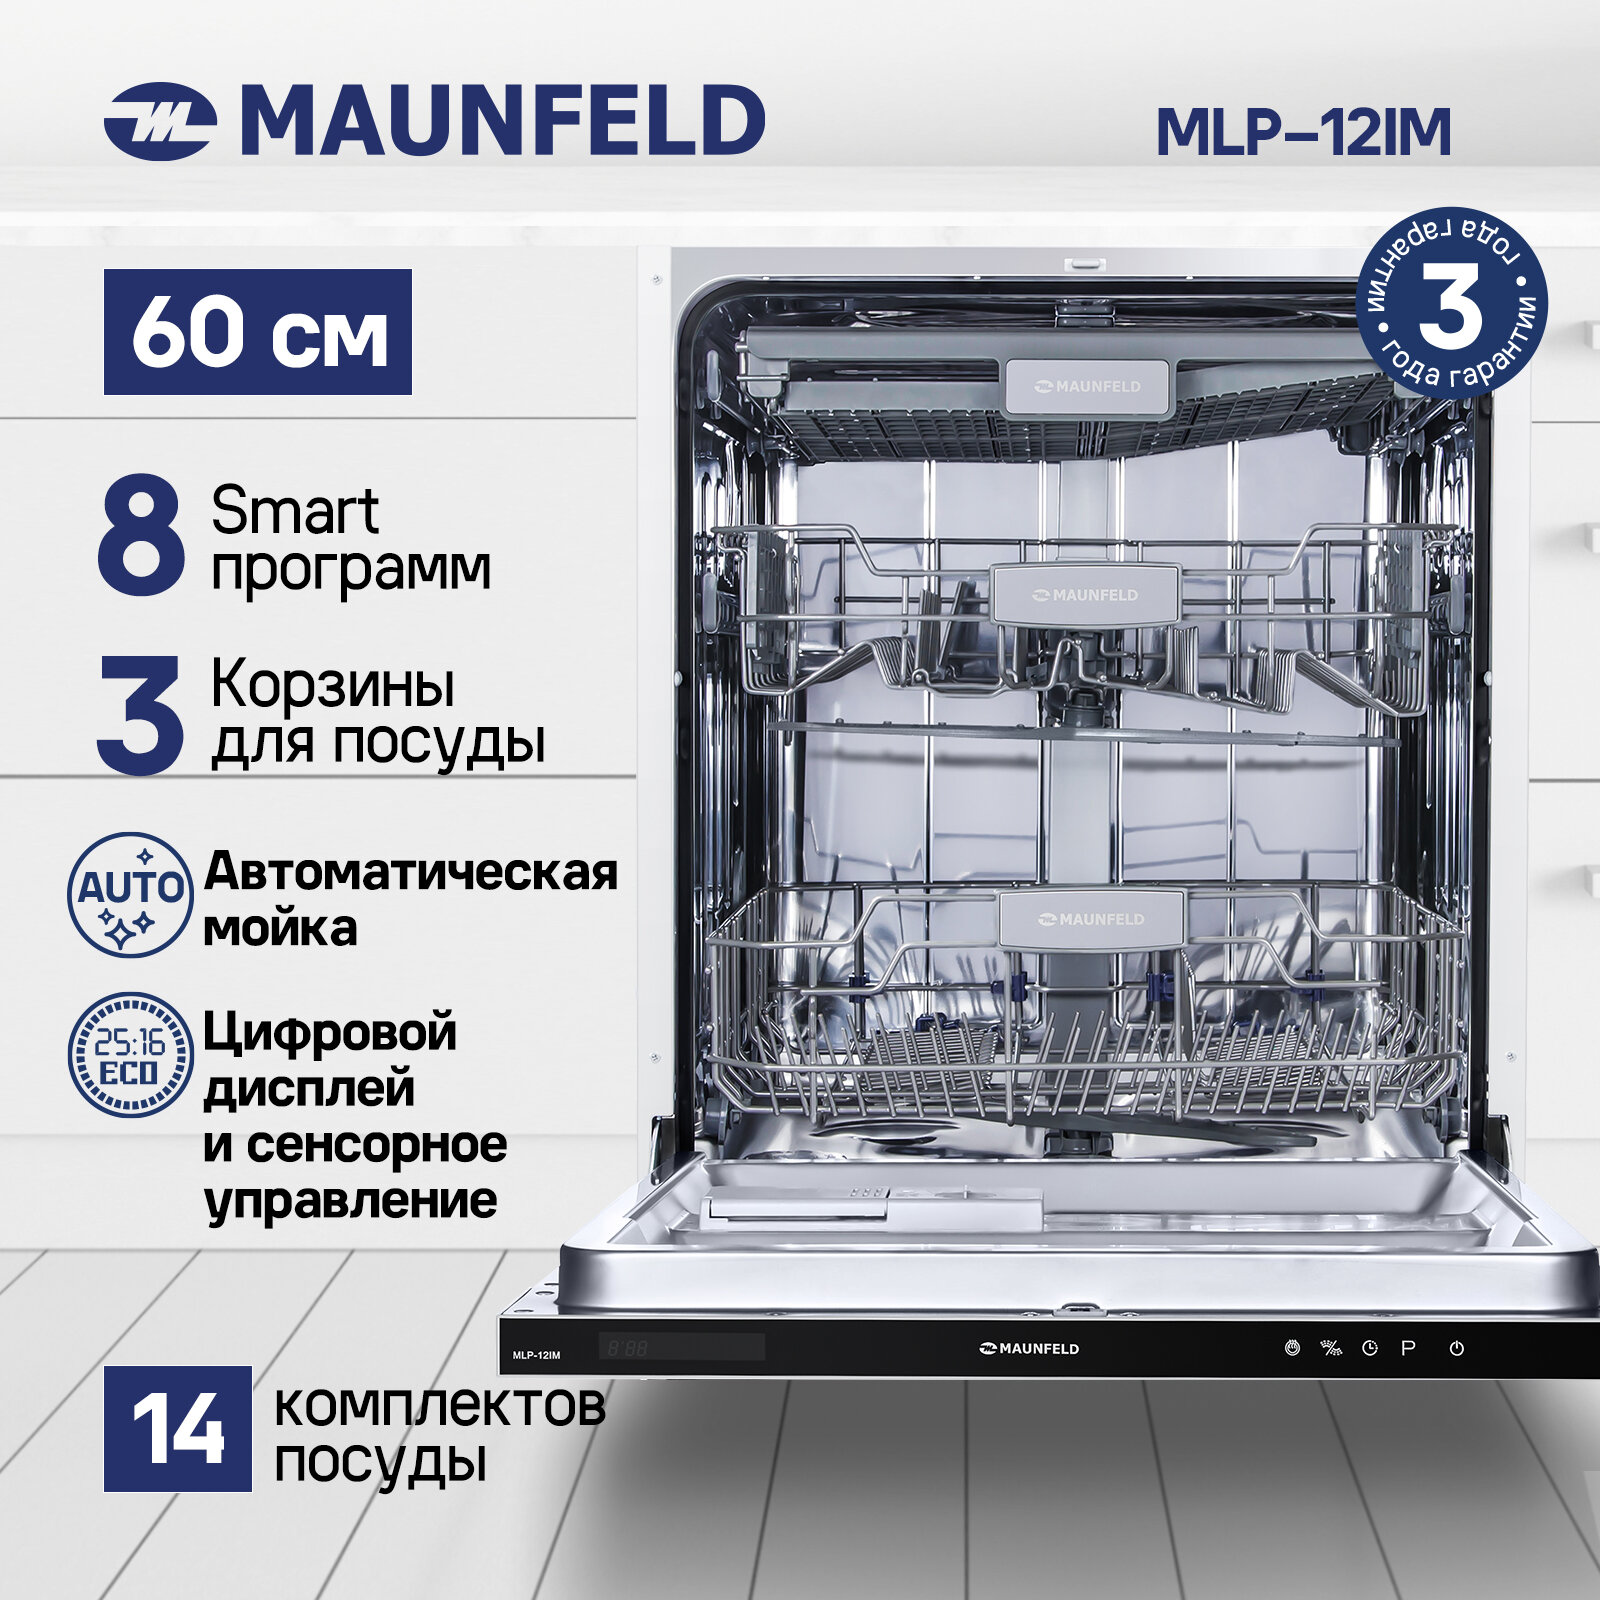 Посудомоечная машина с турбосушкой и лучом на полу MAUNFELD MLP-12IM